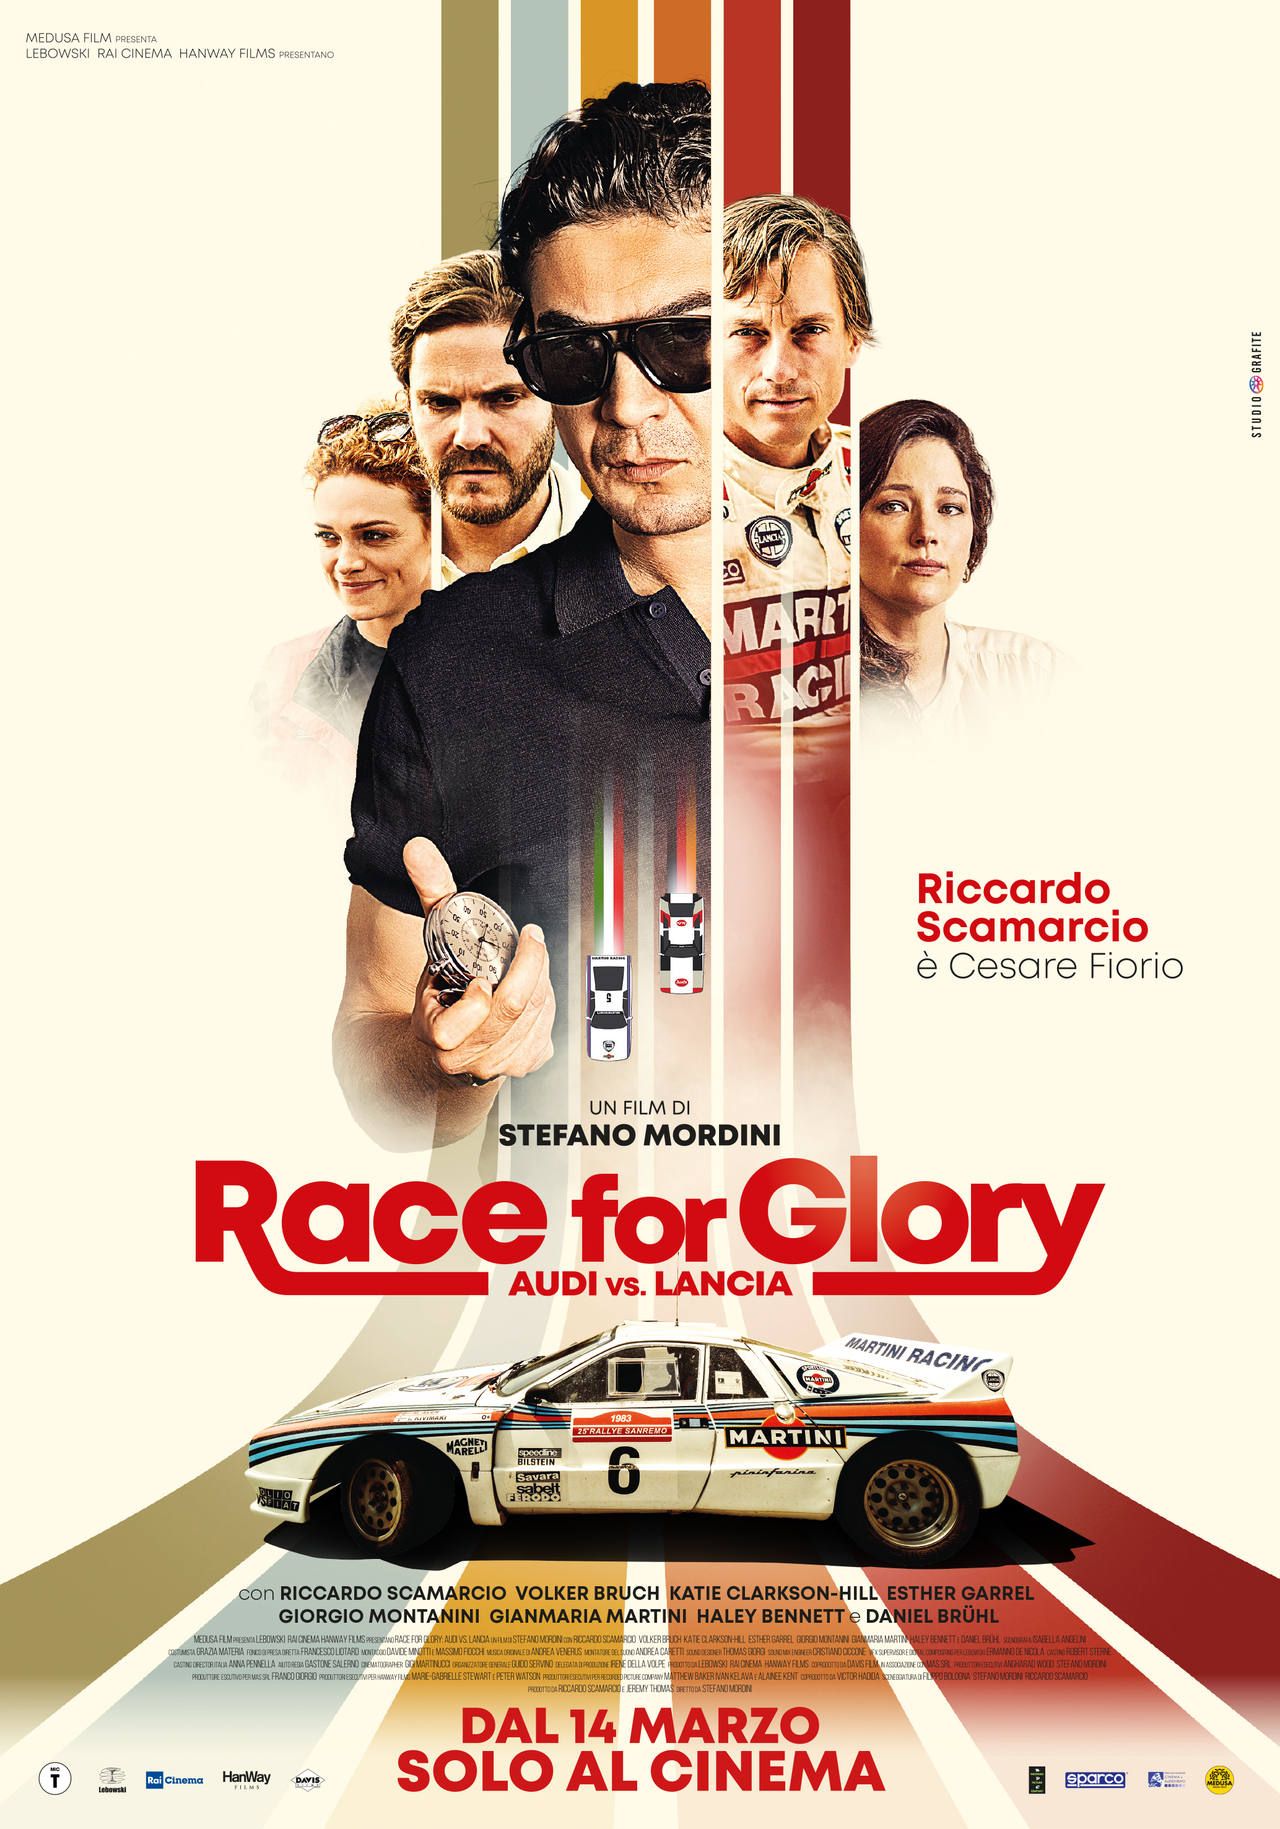 Lancia freut sich über die Kinostart von 'Race for Glory - Audi vs. Lancia' in den italienischen Kinos – Start in Deutschland: unbekannt!